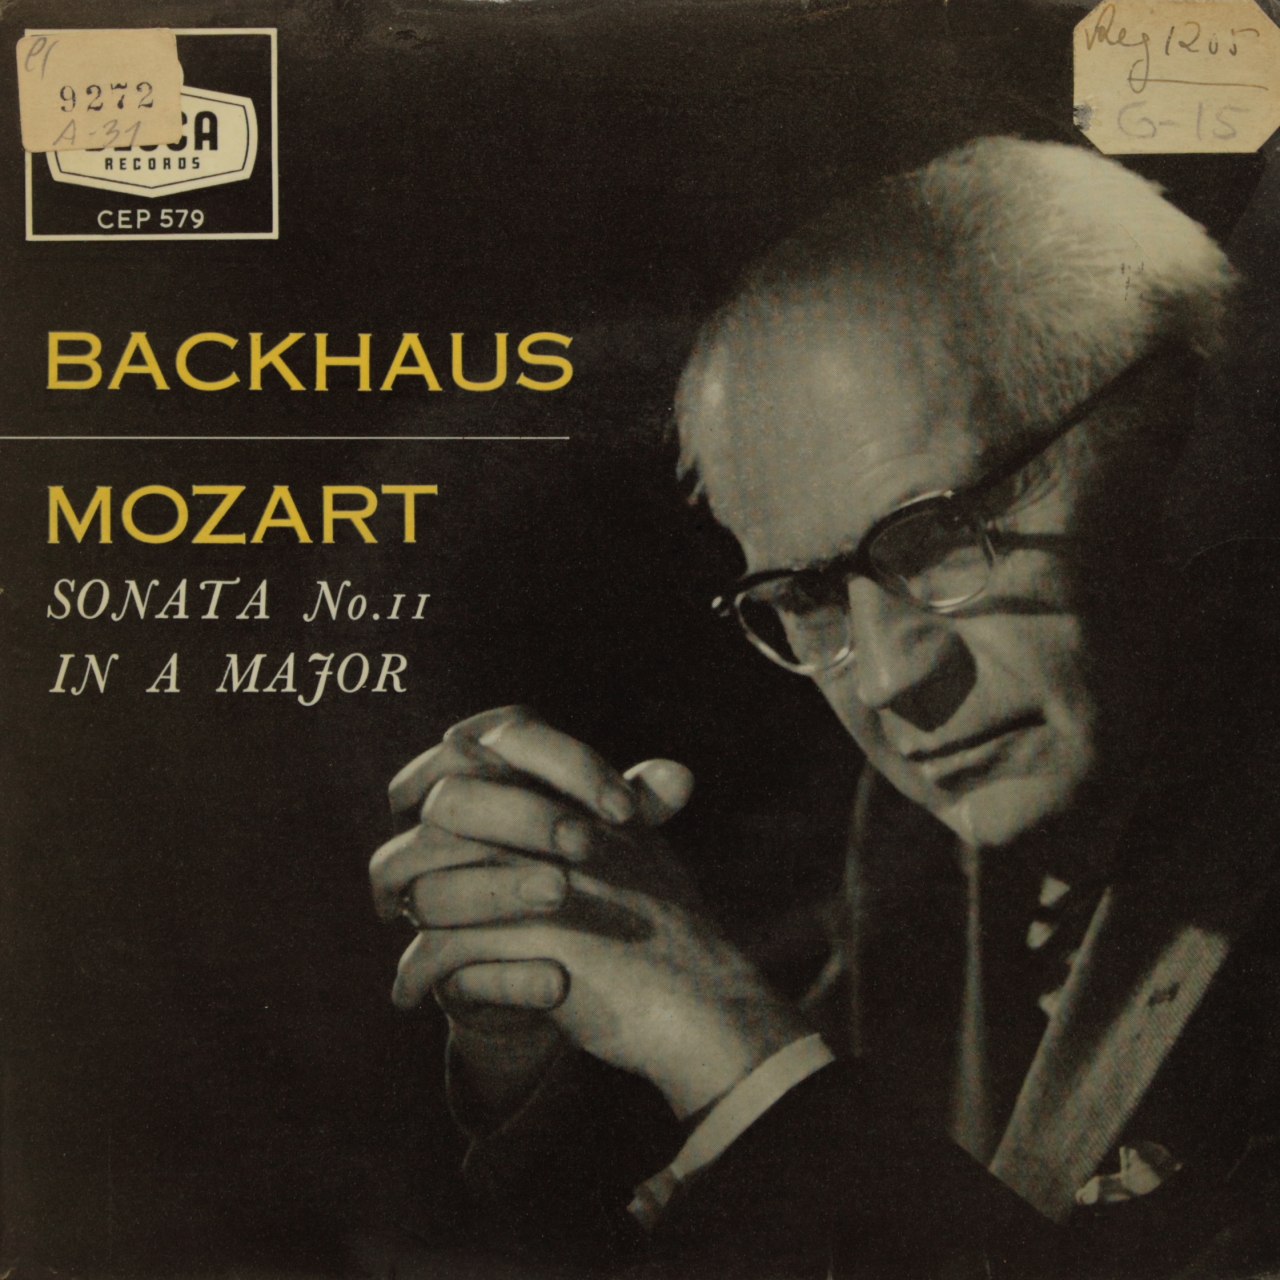 Mozart: Sonata No. 11 in a Major